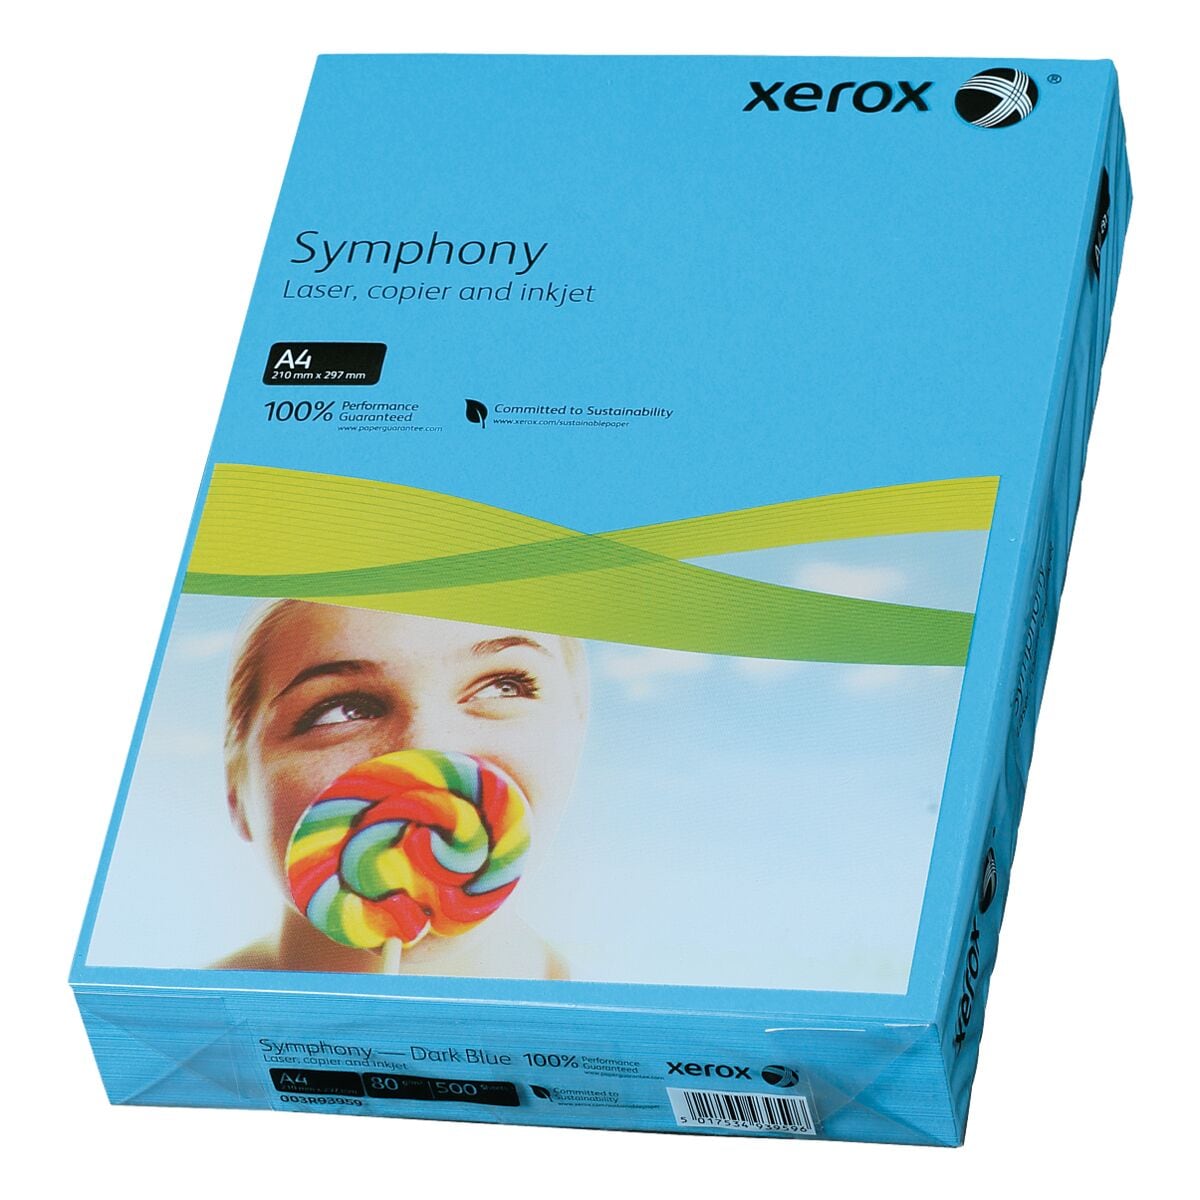 Farbiges Druckerpapier A4 Xerox Symphony - 500 Blatt gesamt